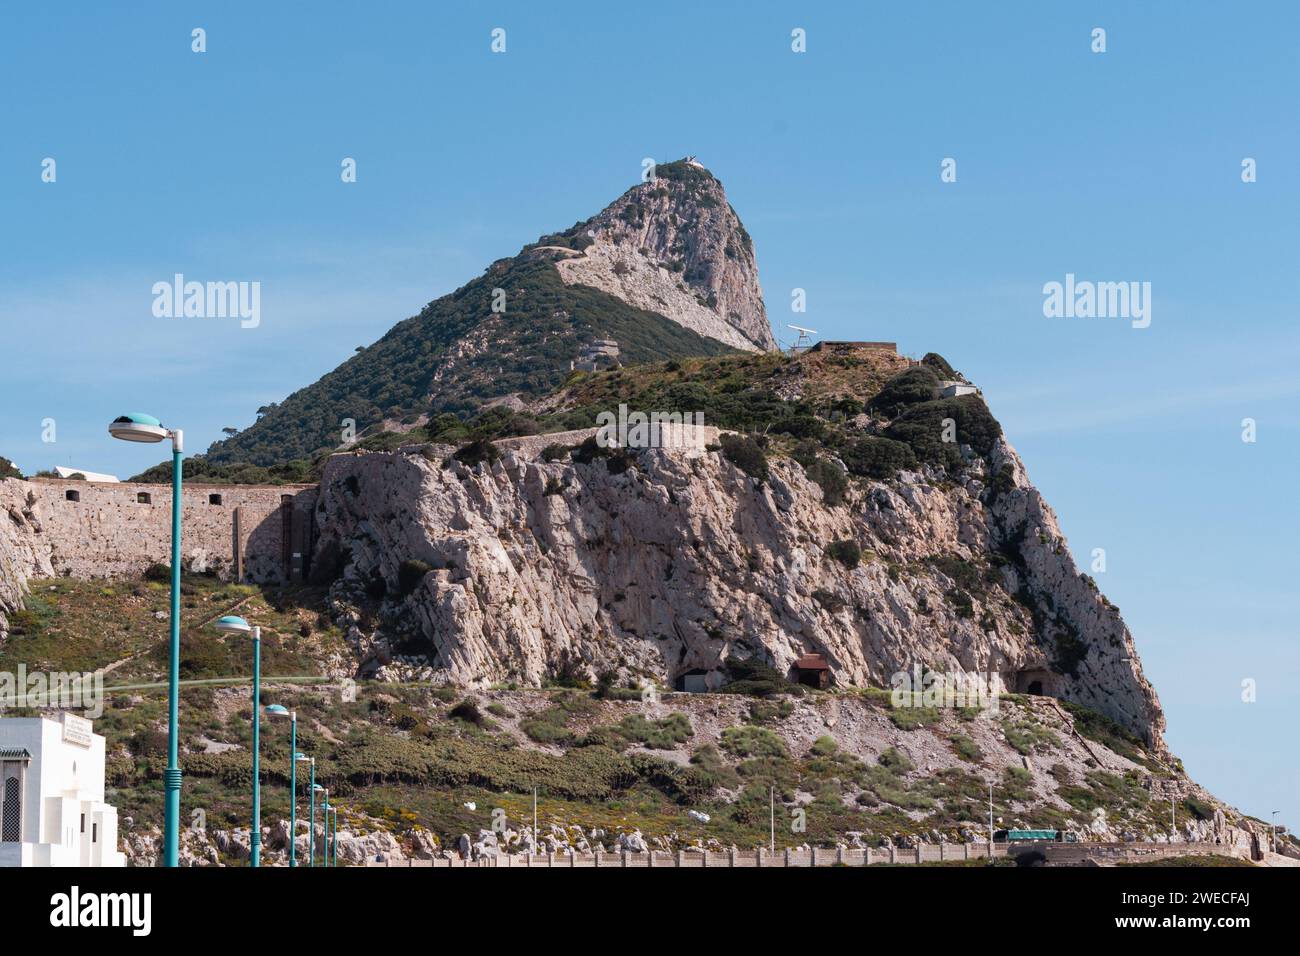 La Rocca di Gibilterra: Un maestoso punto di riferimento costiero, una meraviglia geologica e un simbolo del patrimonio britannico affacciato sul Mediterraneo. Foto Stock